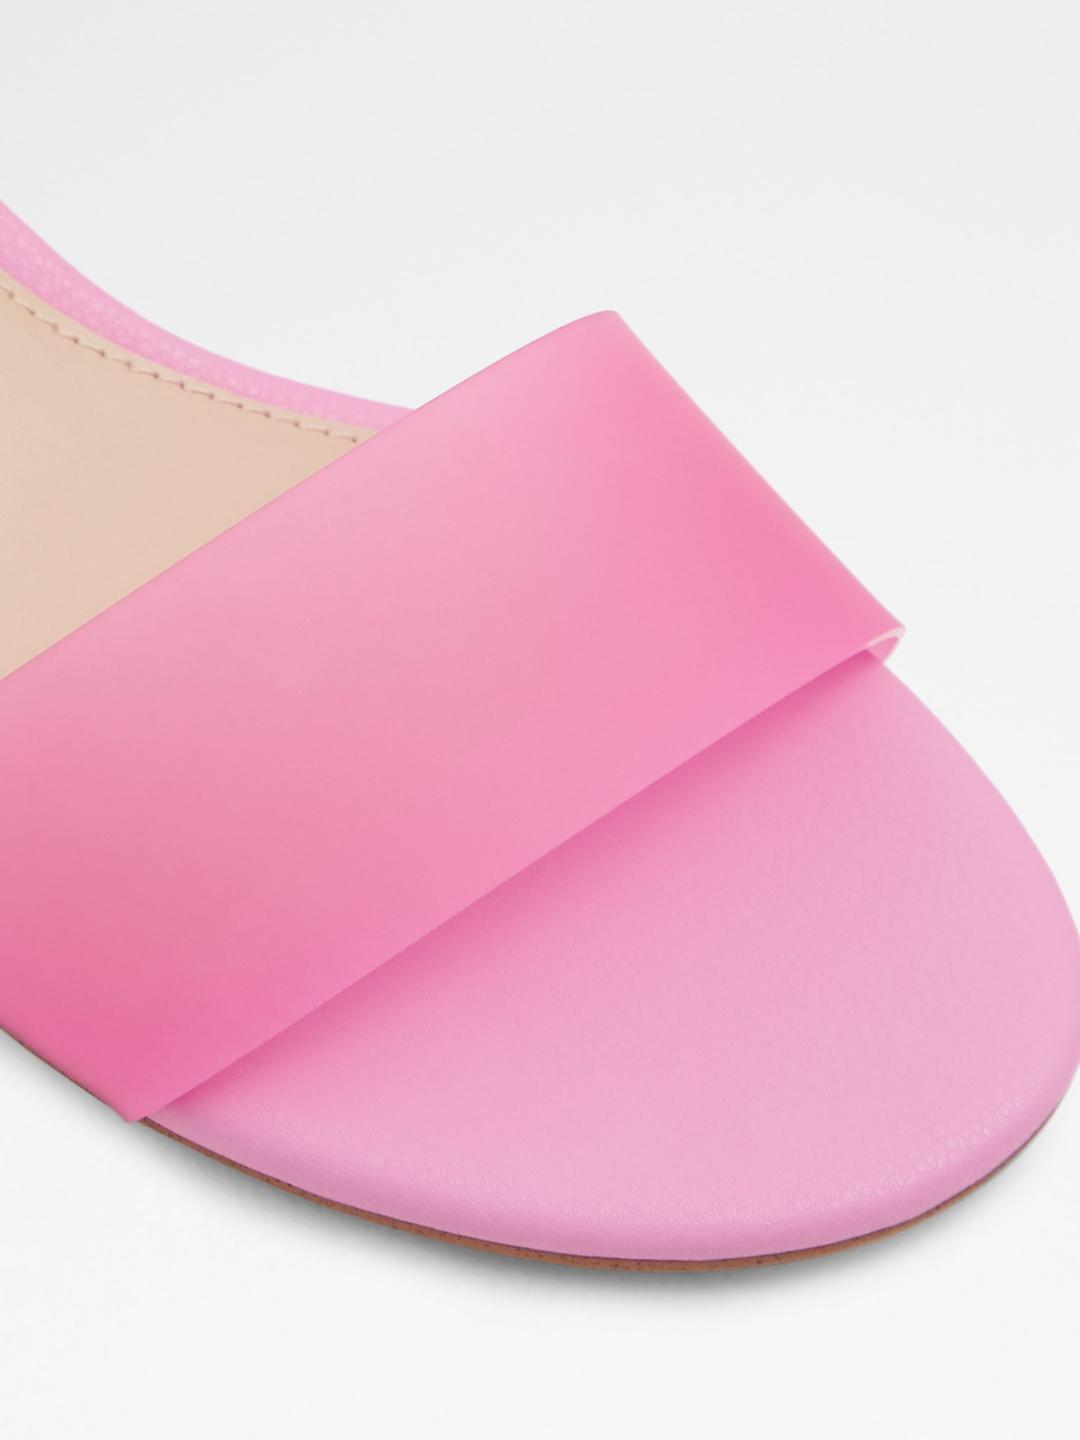 aldo pink heels